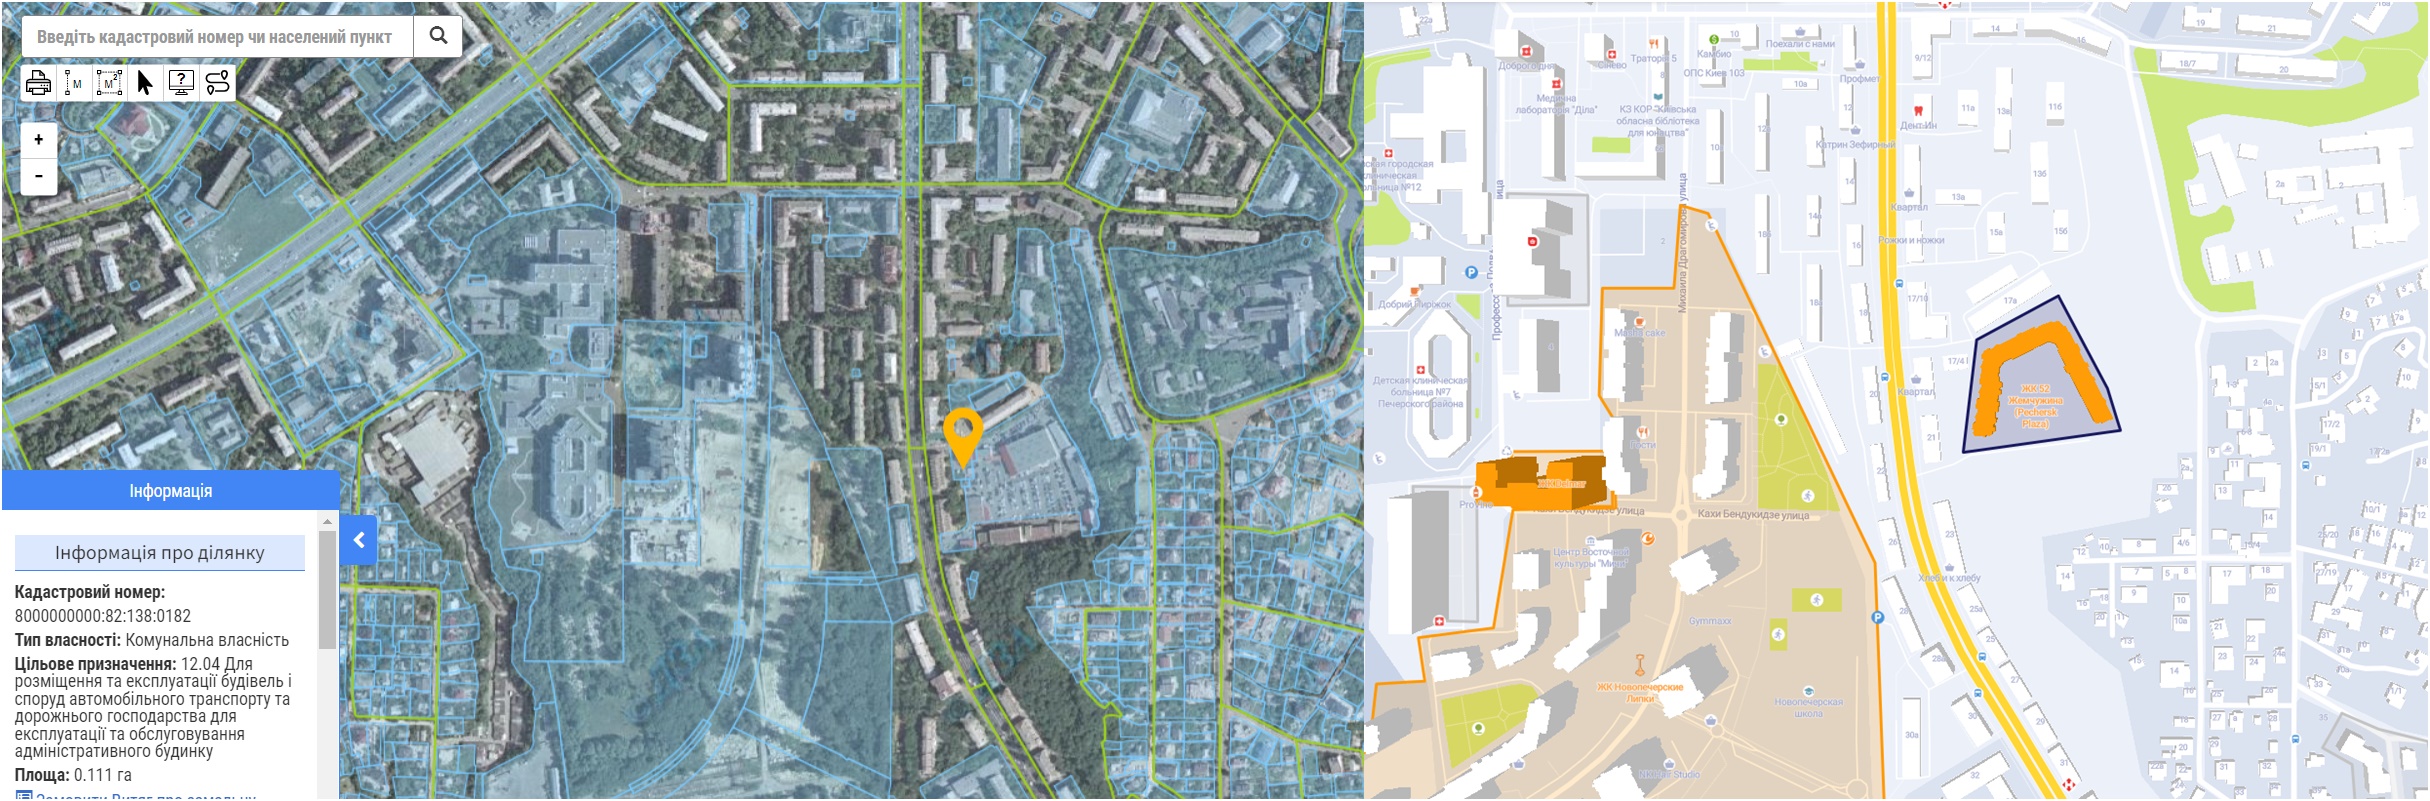 Проект реконструкции по ул. Бойчука, 17 данные кадастра и на карте